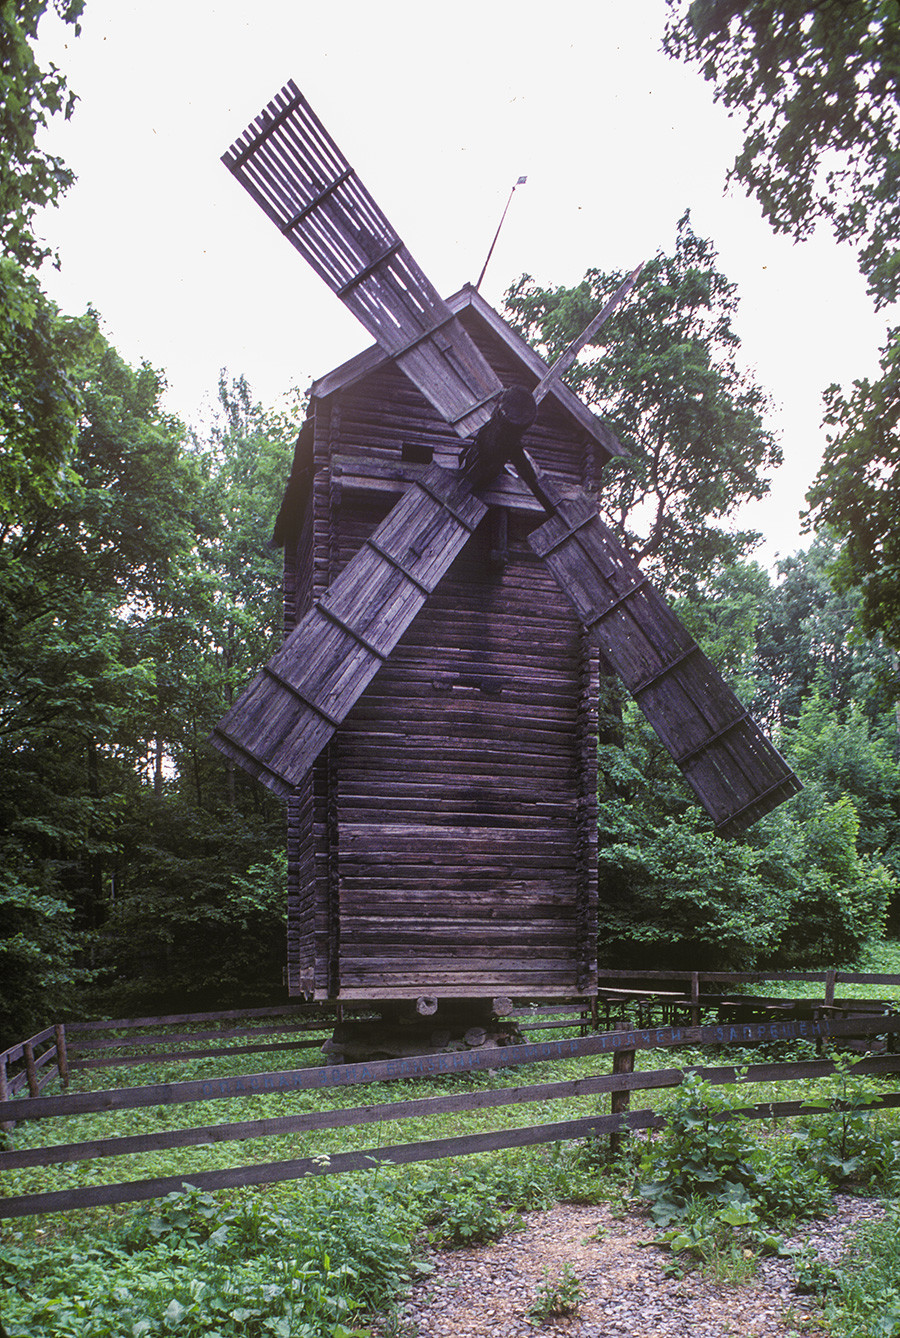 Muzejski park v Nižnjem Novgorodu. Mlin na veter, prvotno v vasi Petuhovo (Gorodetska regija). Struktura mlina se vrti na nizkem nivoju. 23. junij 1996
